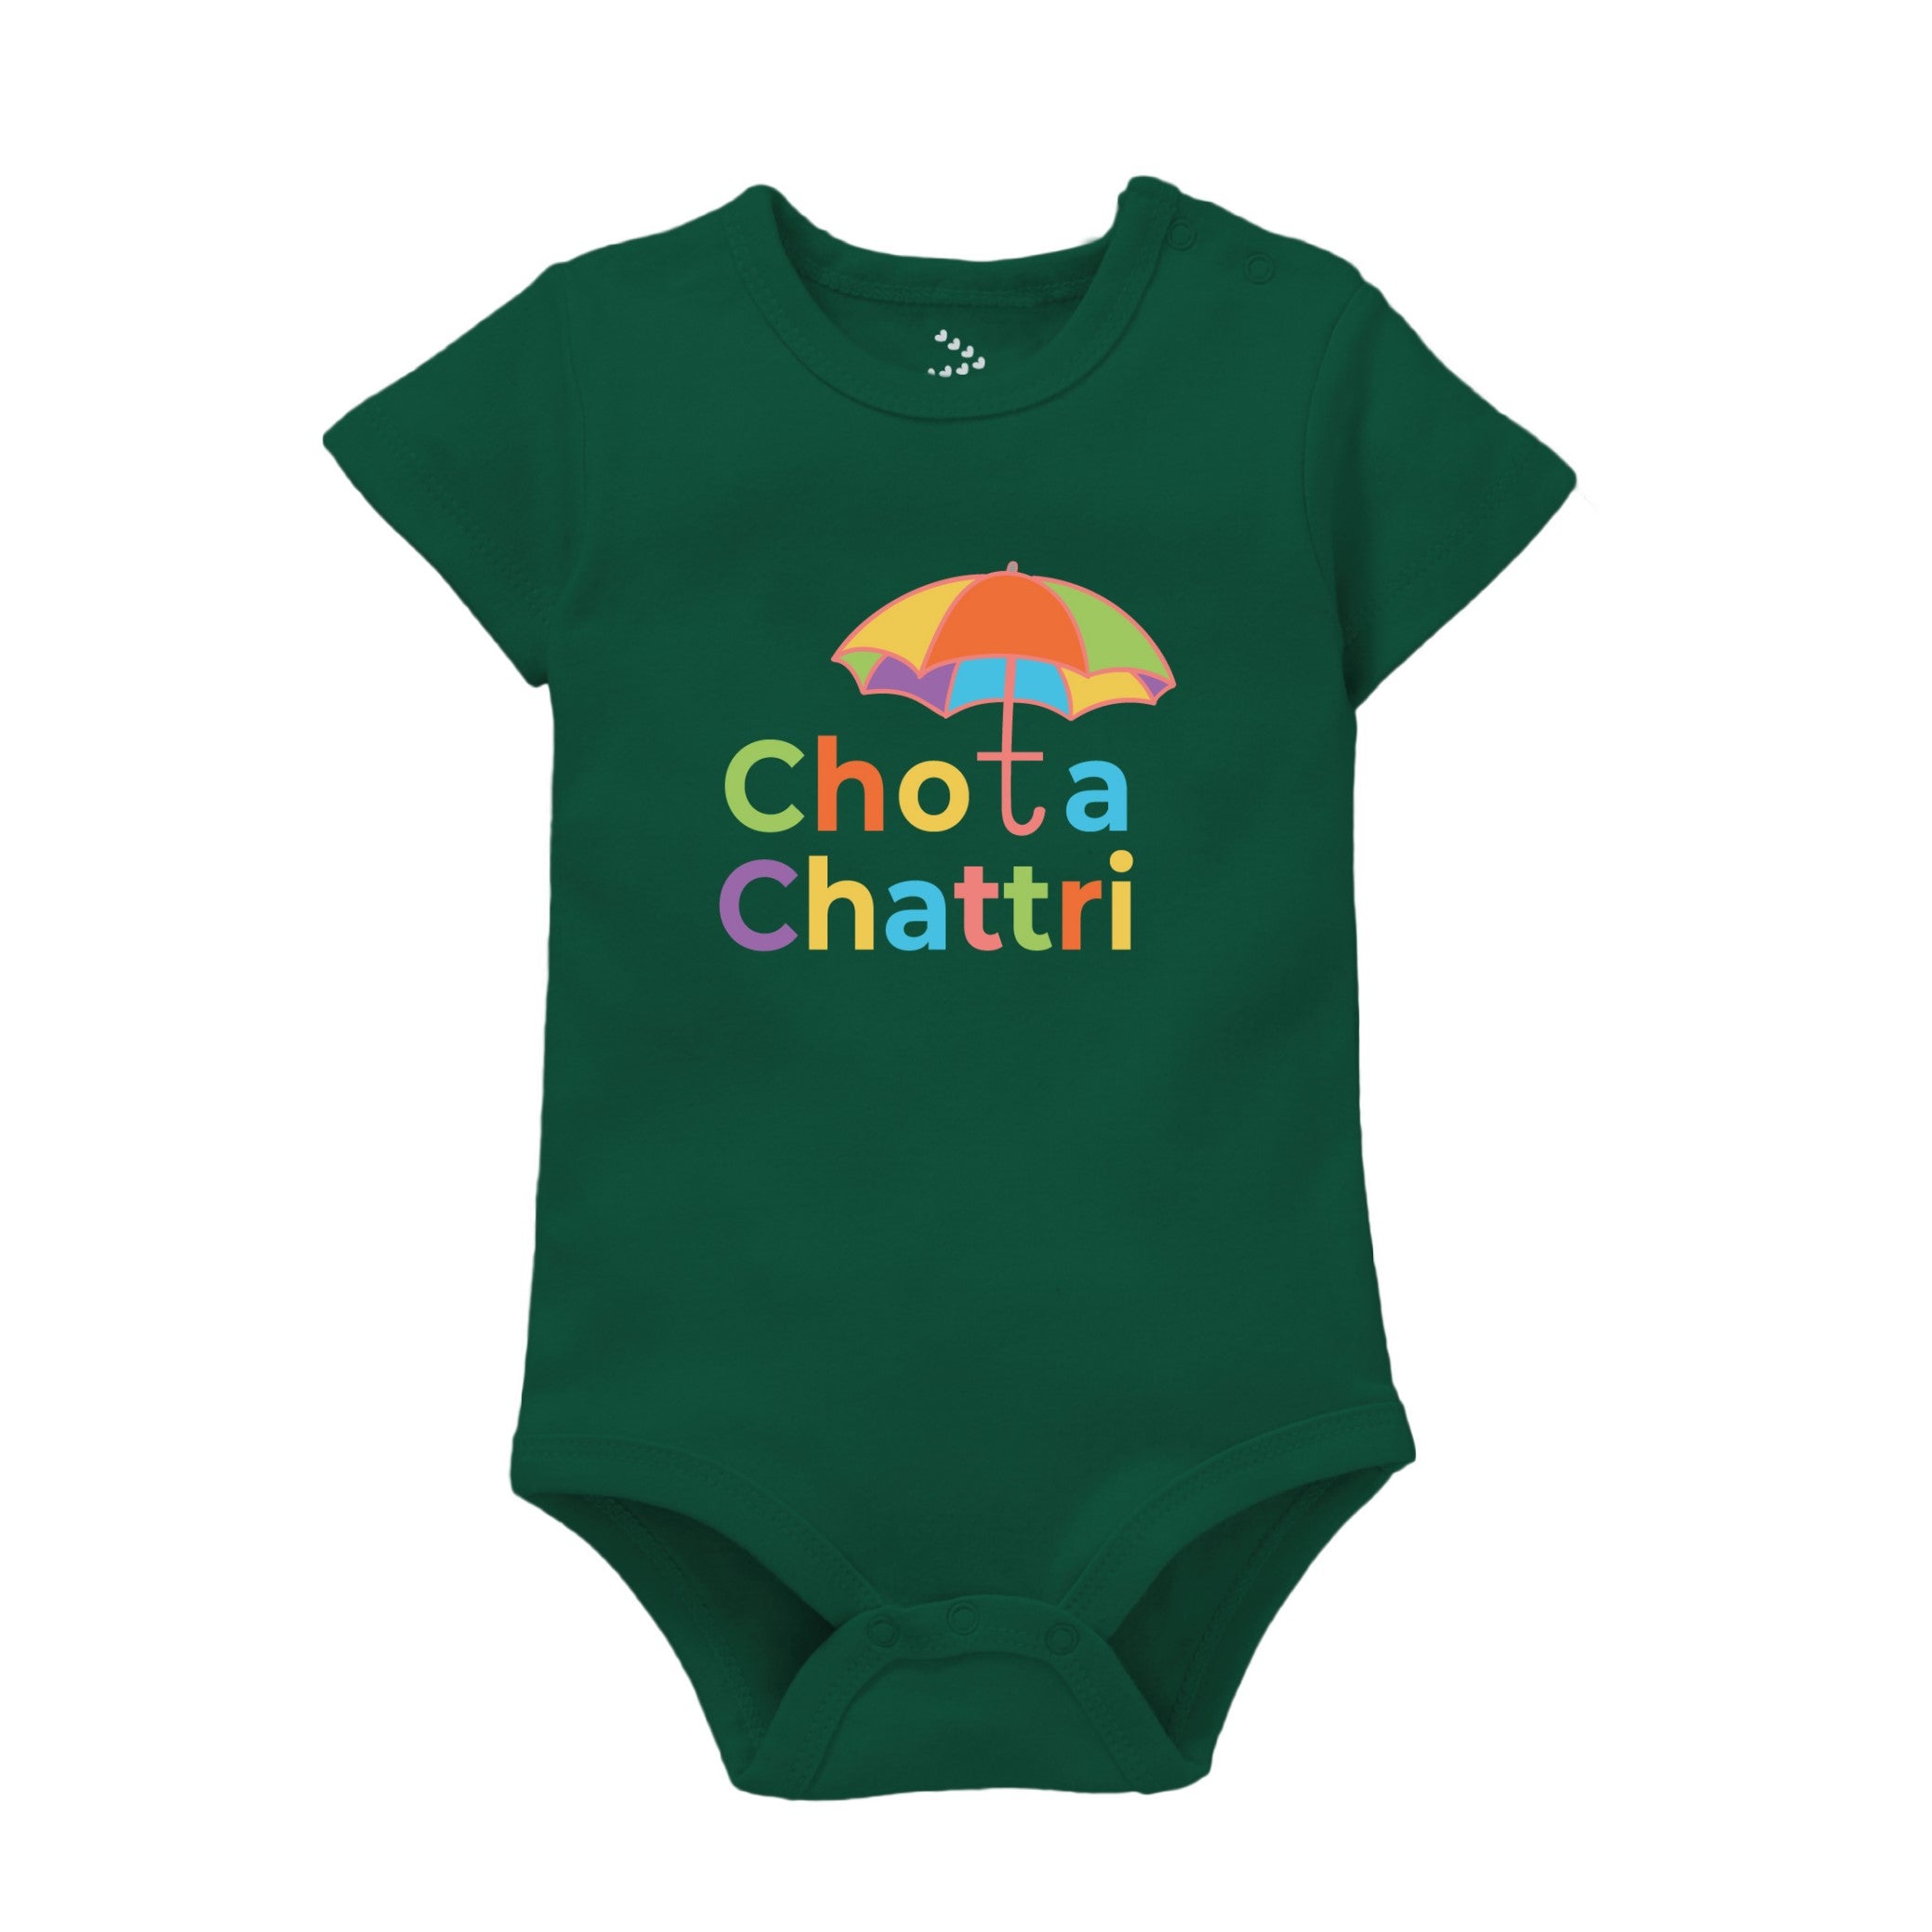 Chota Chattri - Forest Green